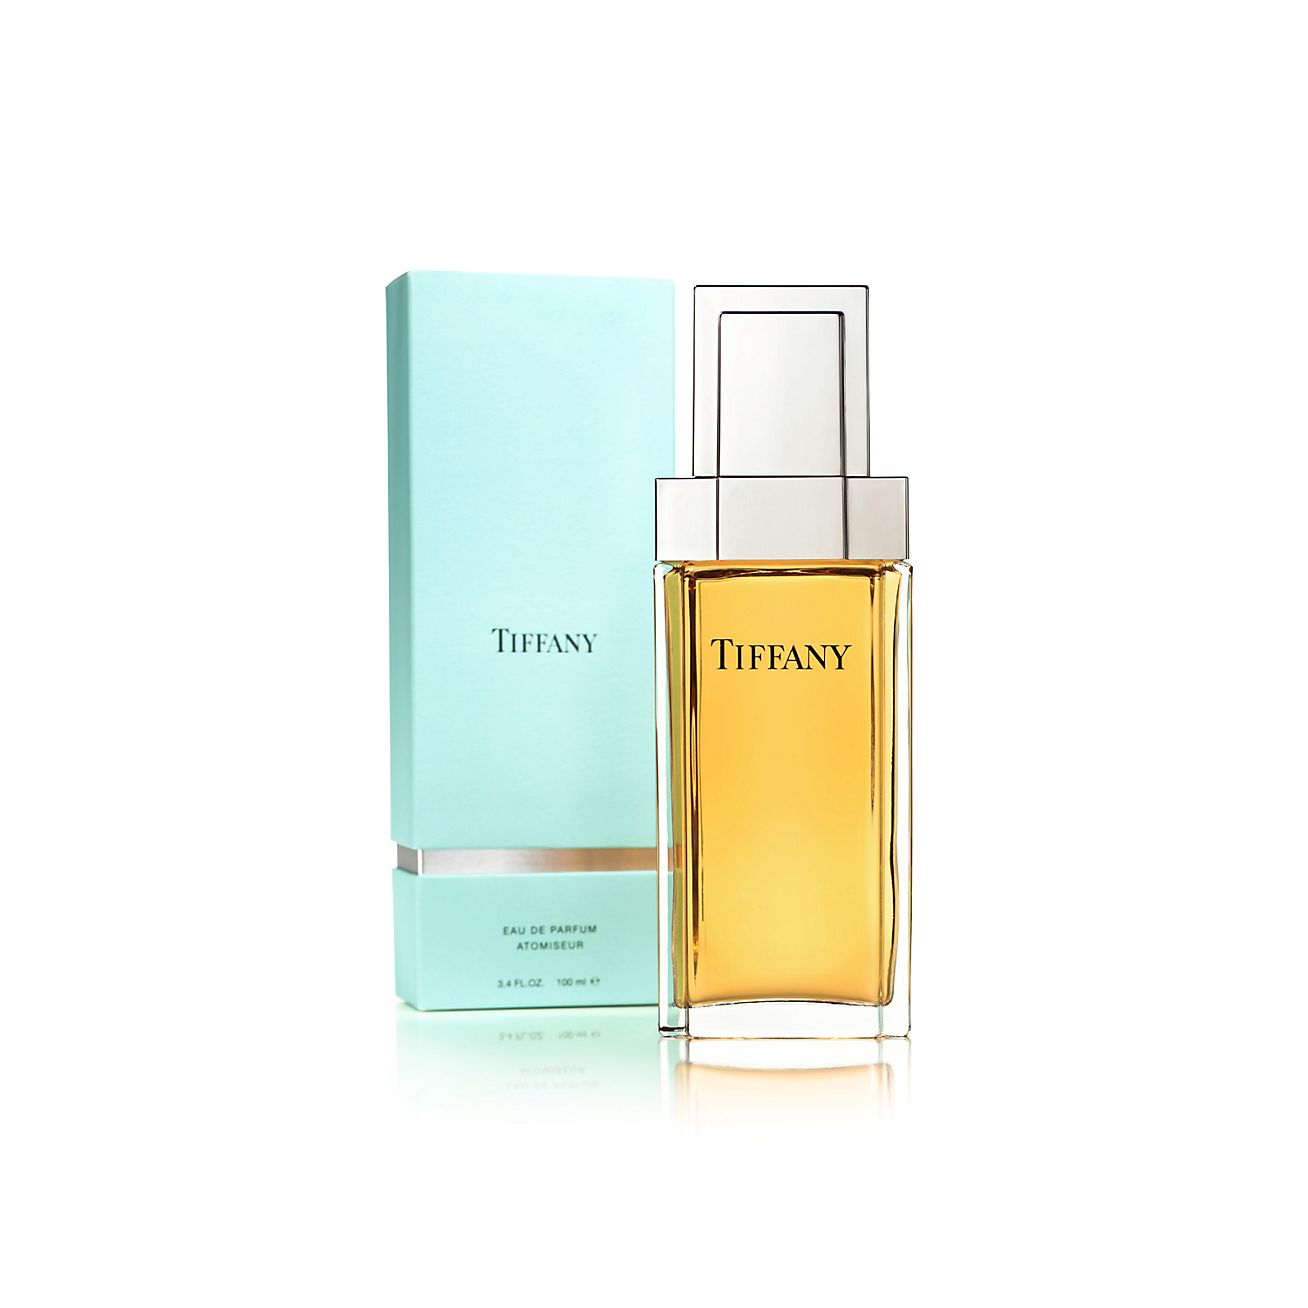 Tiffany Eau de Parfum atomiseur, 3.4 